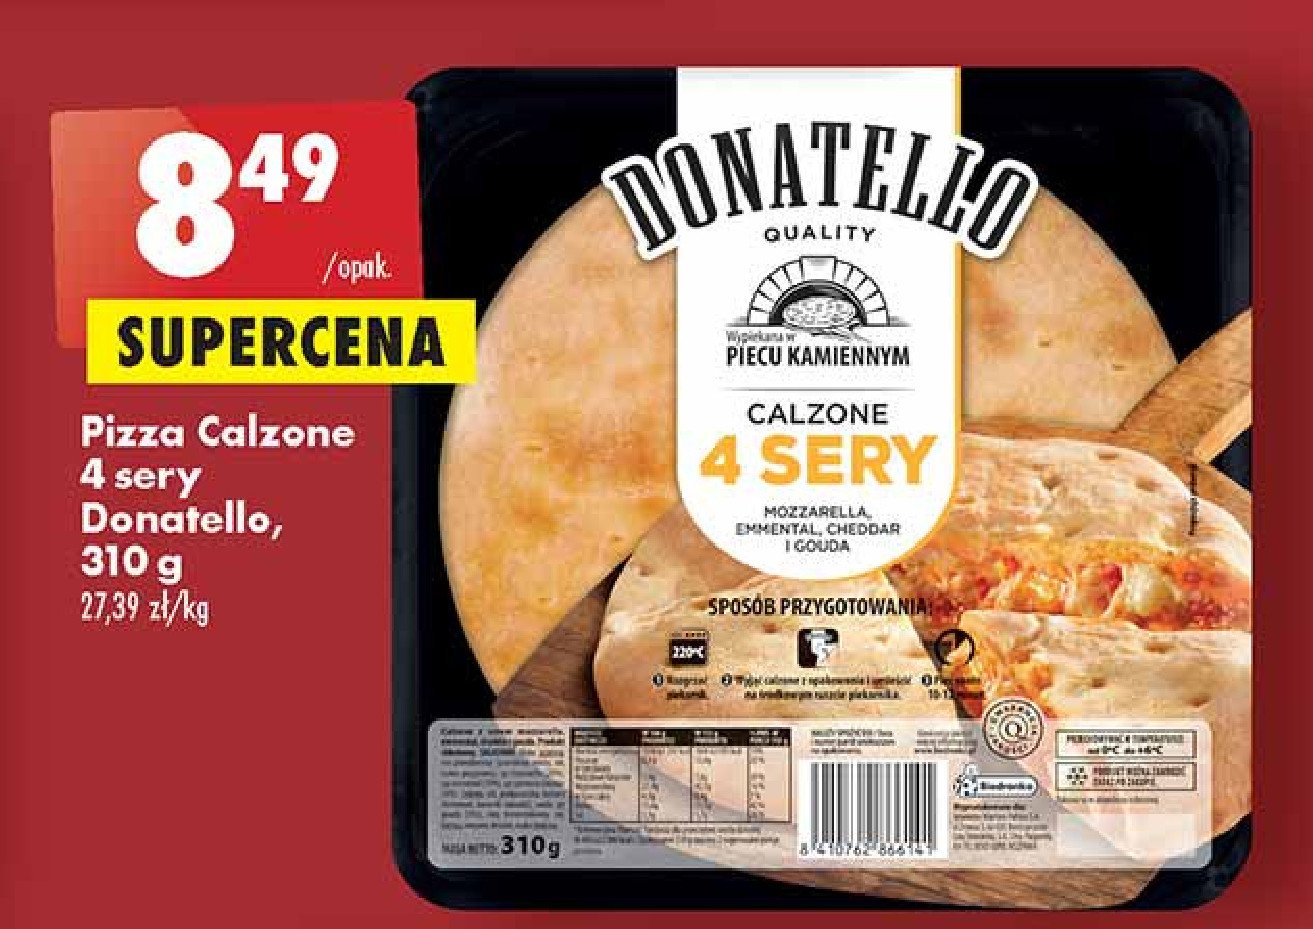 Ciasto calzone 4 formagii Donatello pizza promocja